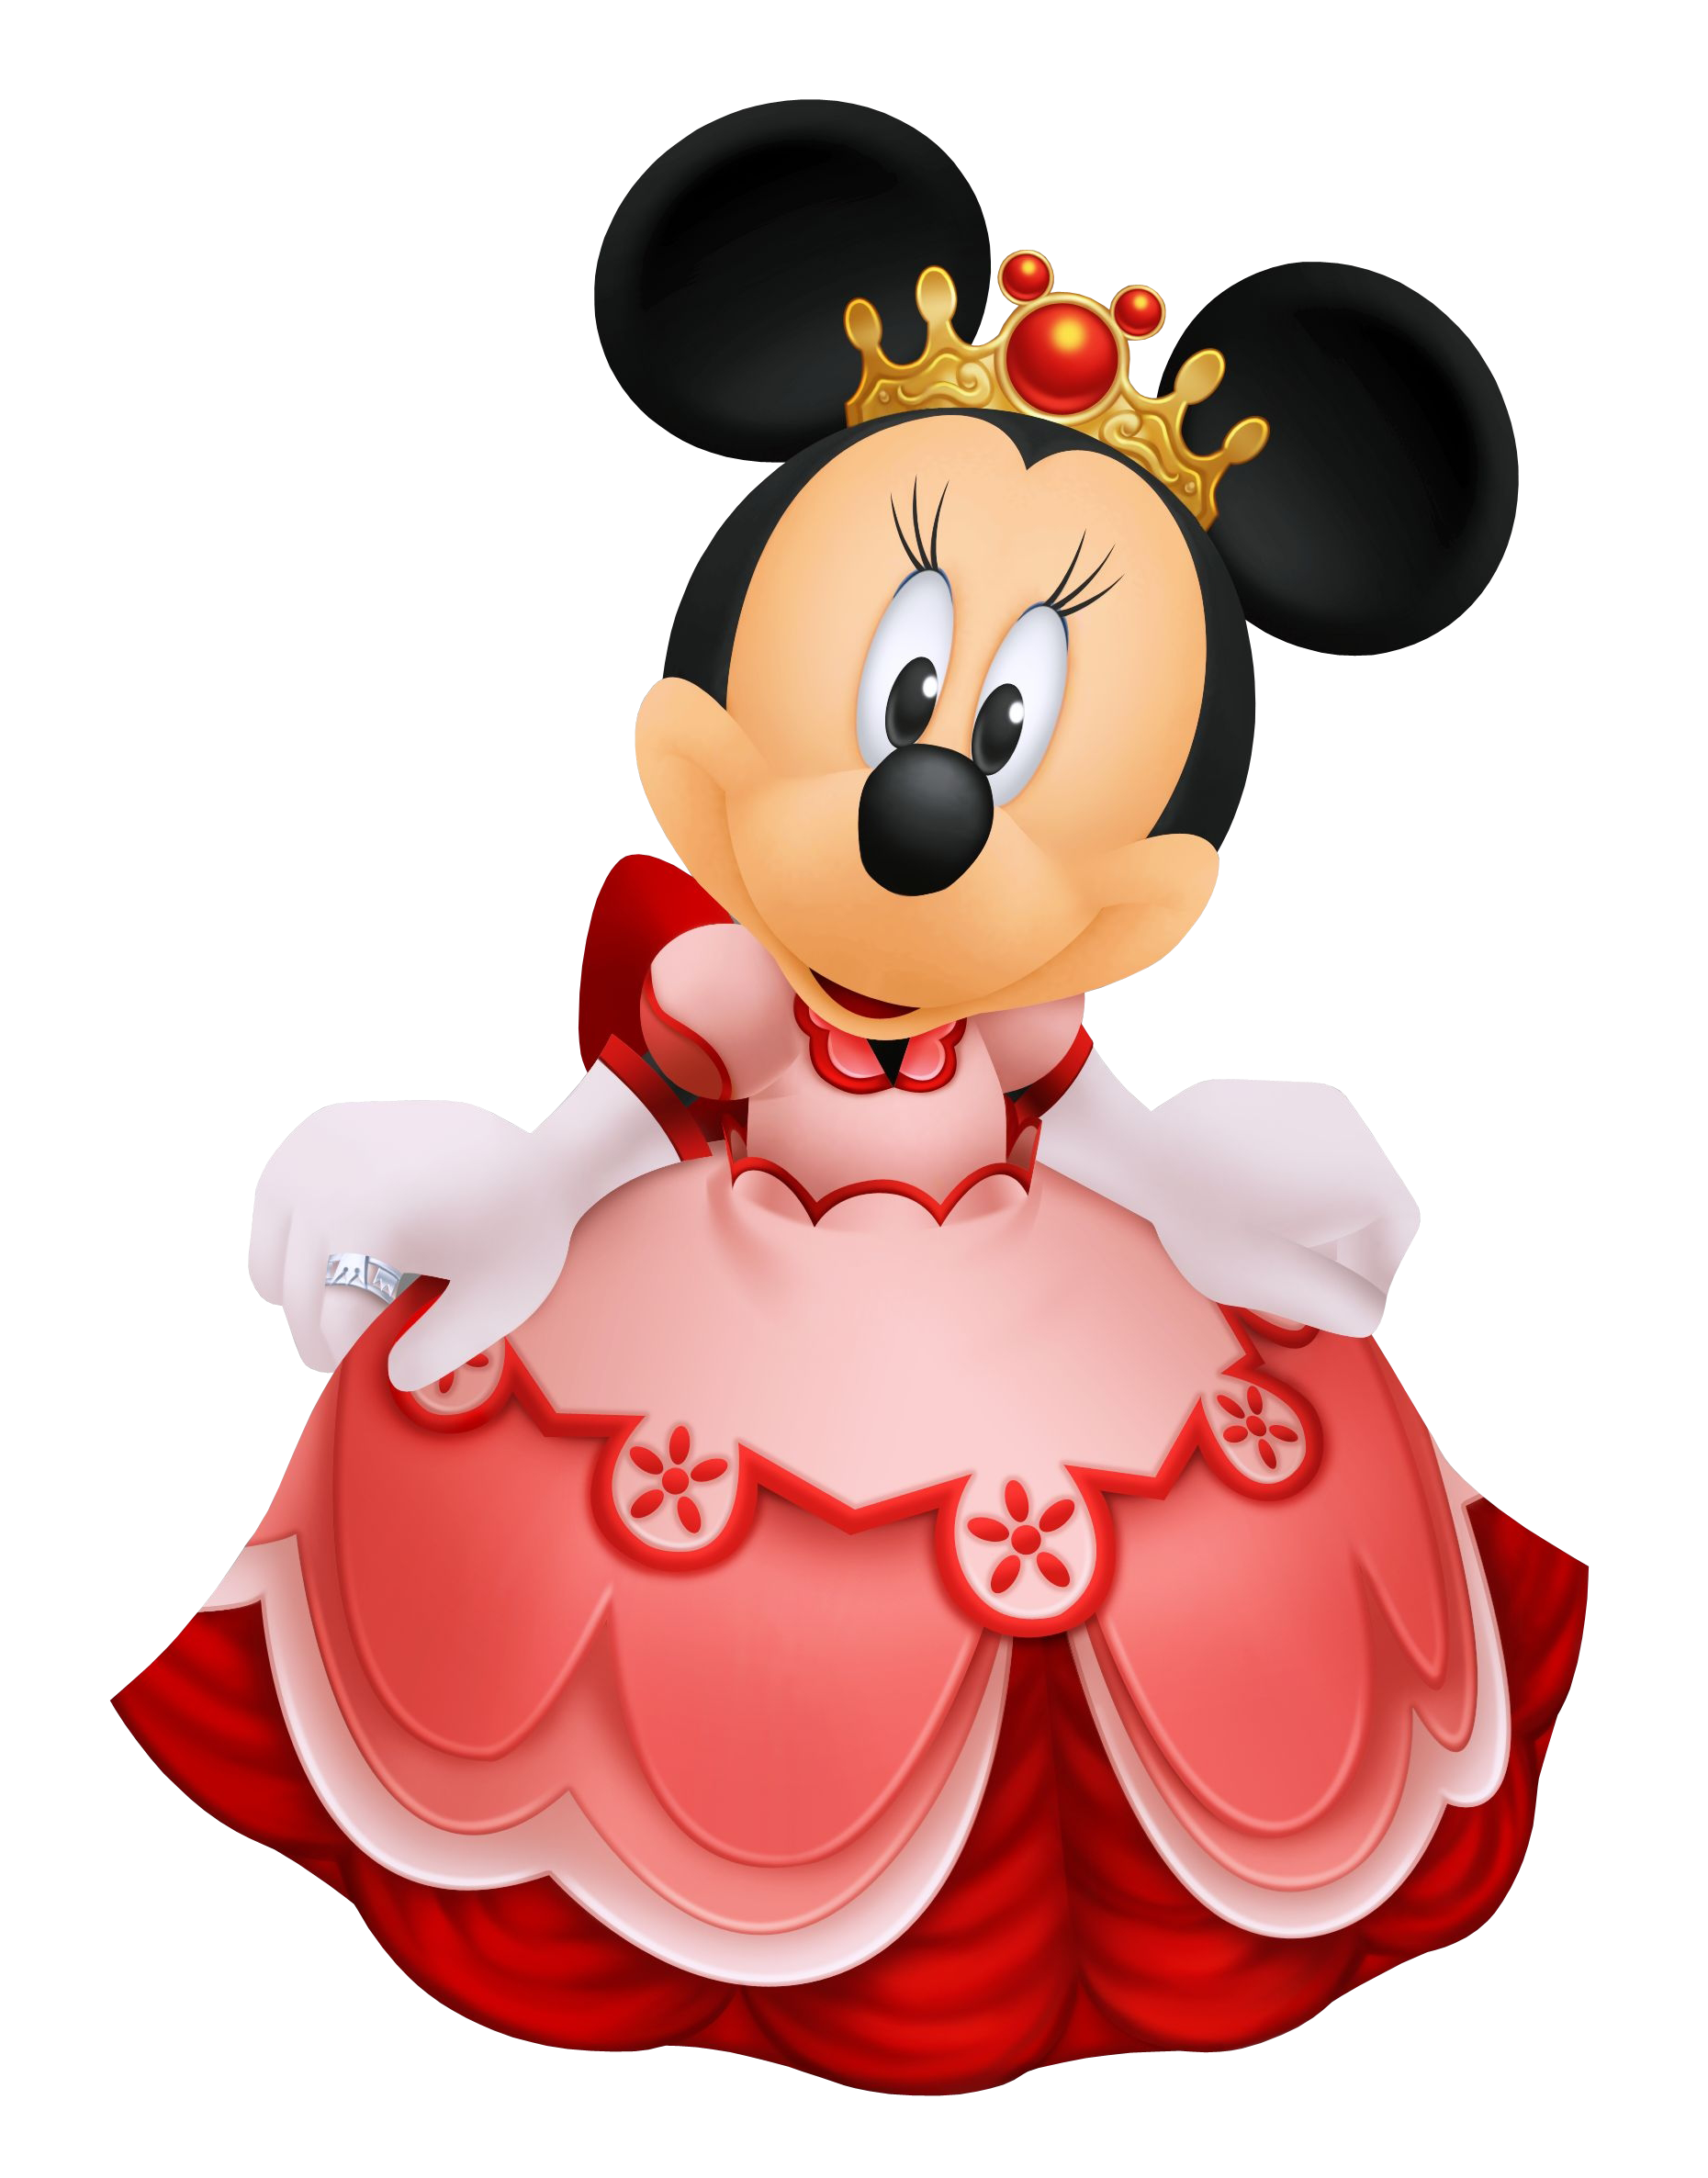 Mouse princess. Минни Маус Дисней. Минни Маус Королева. Герои мультика Минни Маус. Микки Маус принцесса.